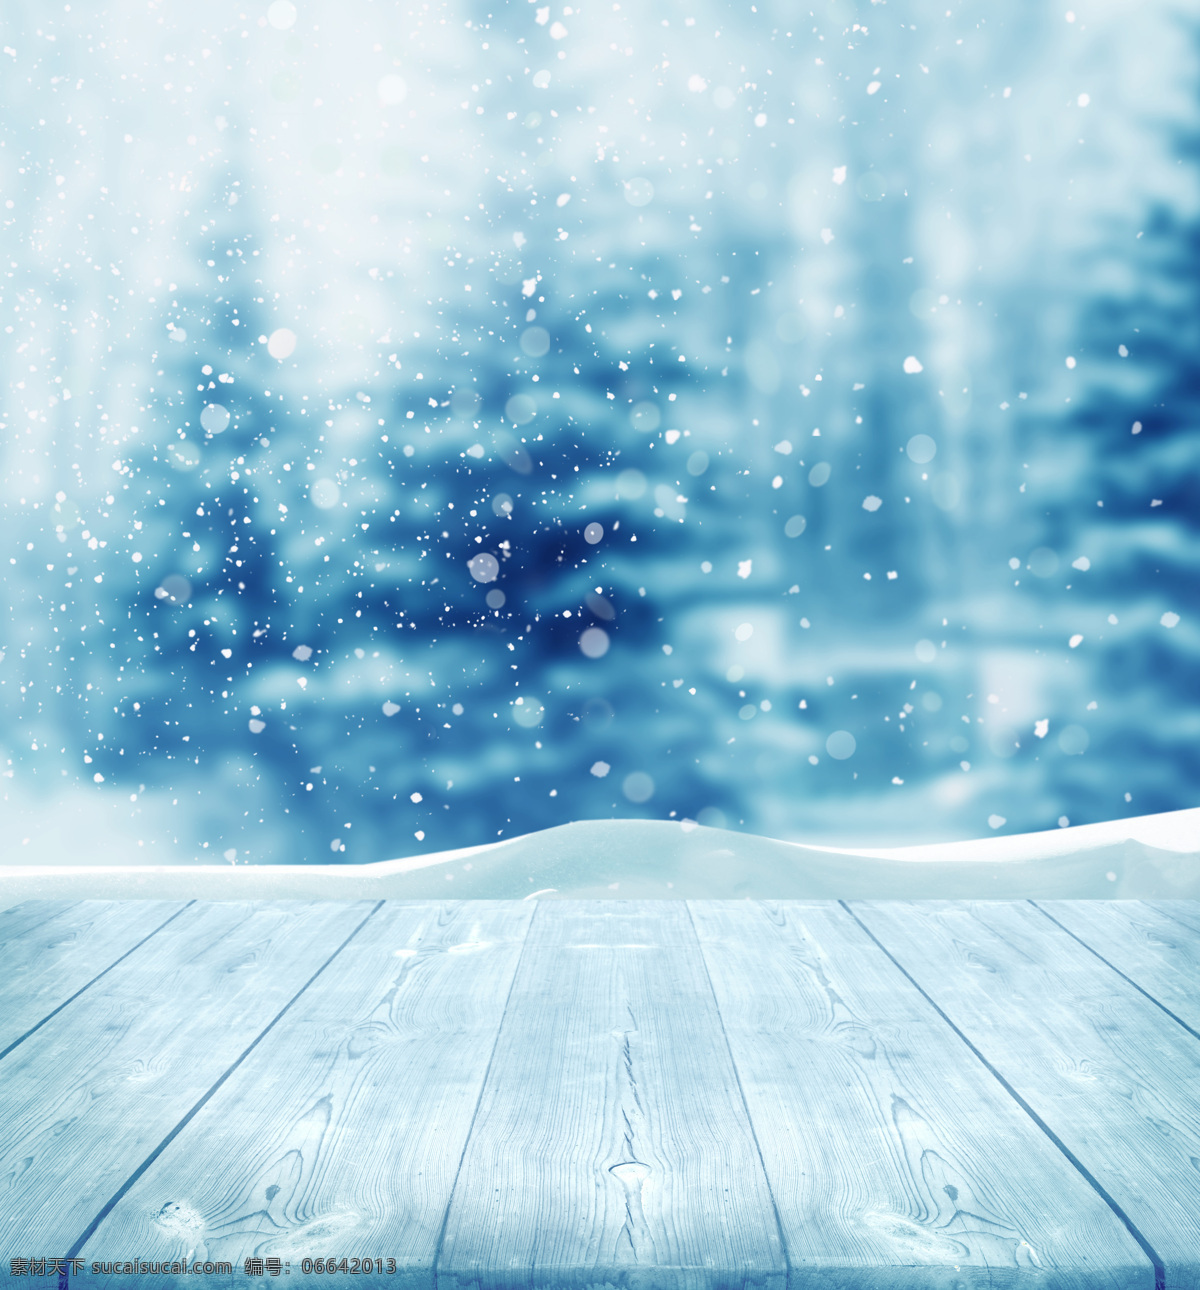 木板 上方 雪花 背景 冬季美景 美丽风景雪花 漂亮景色 风景摄影 雪地风景 自然风景 山水风景 风景图片